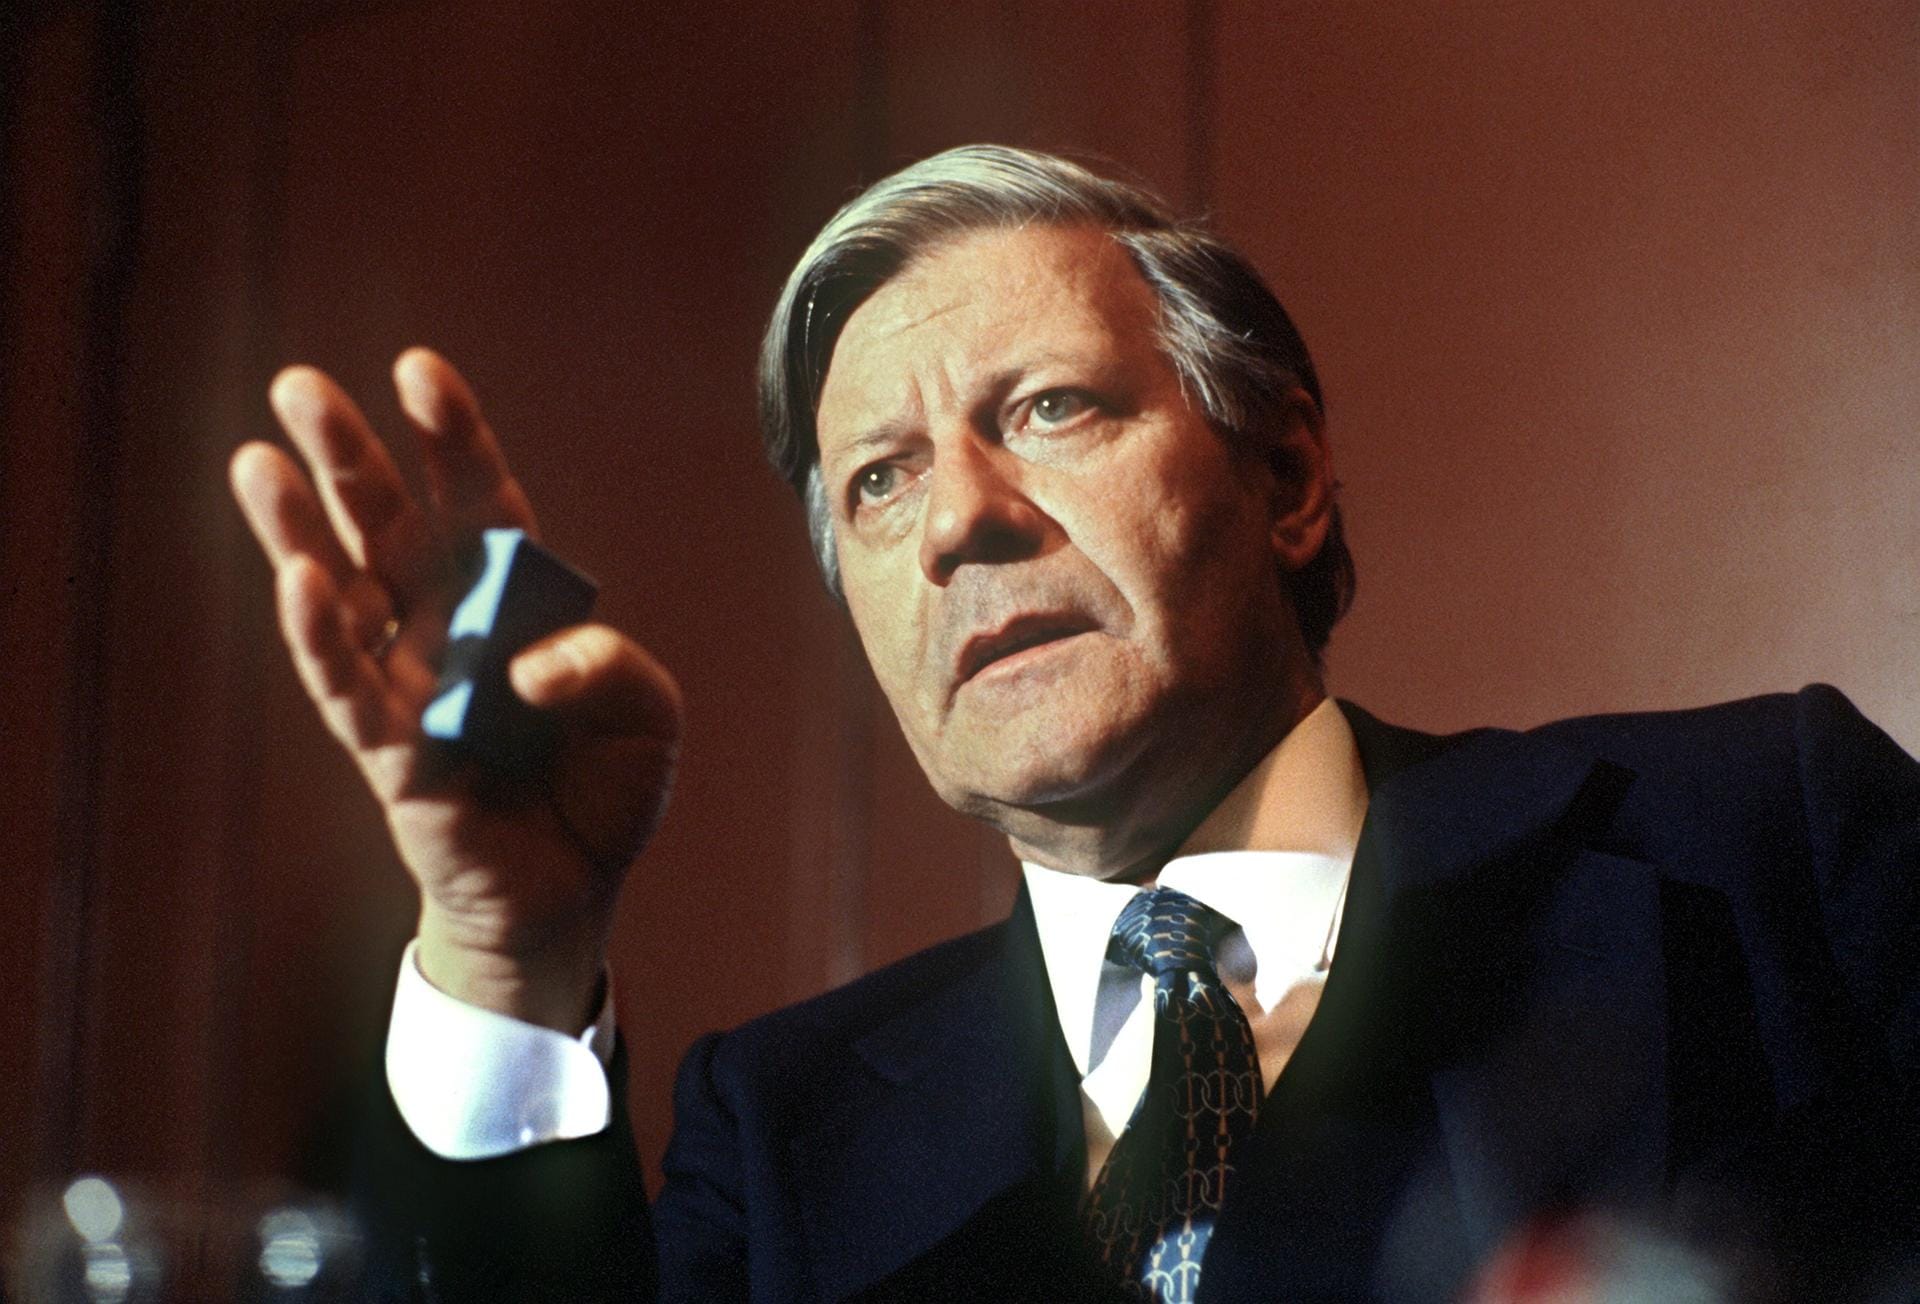 Nach seiner politischen Karriere wurde Schmidt 1983 Mitherausgeber der Wochenzeitung "Die Zeit".